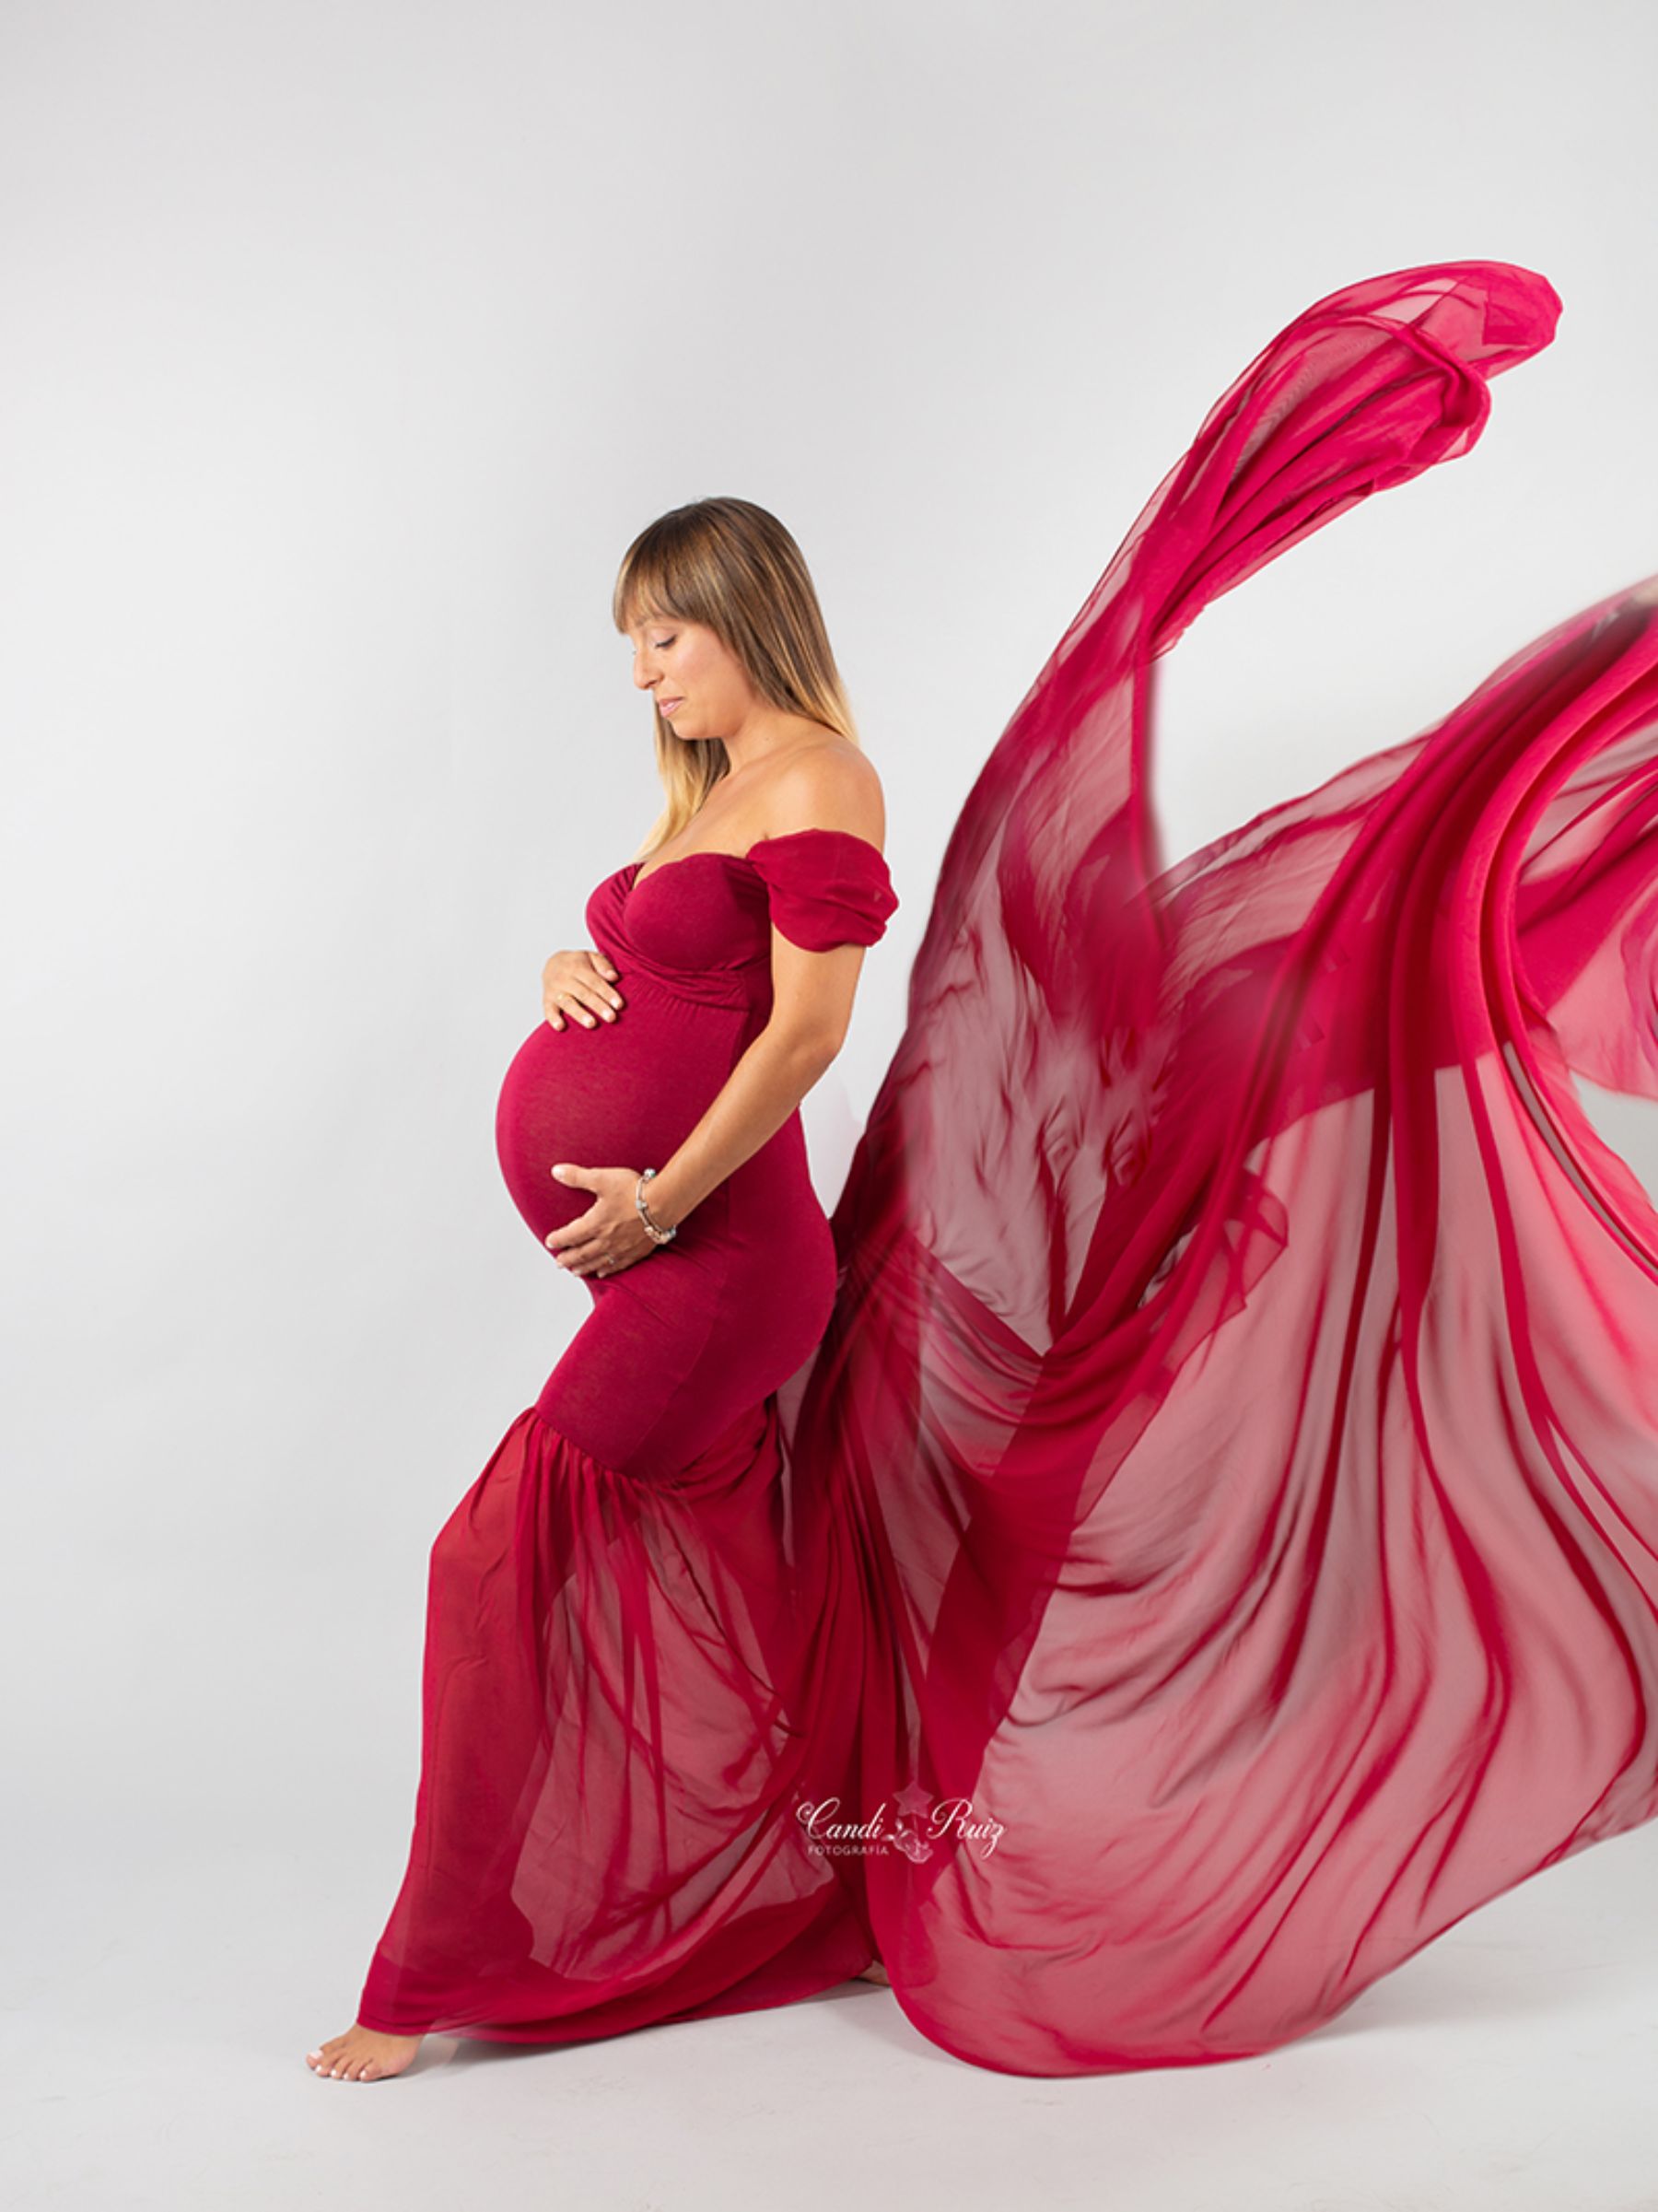 Fotografo embarazo alcala de henares madrid